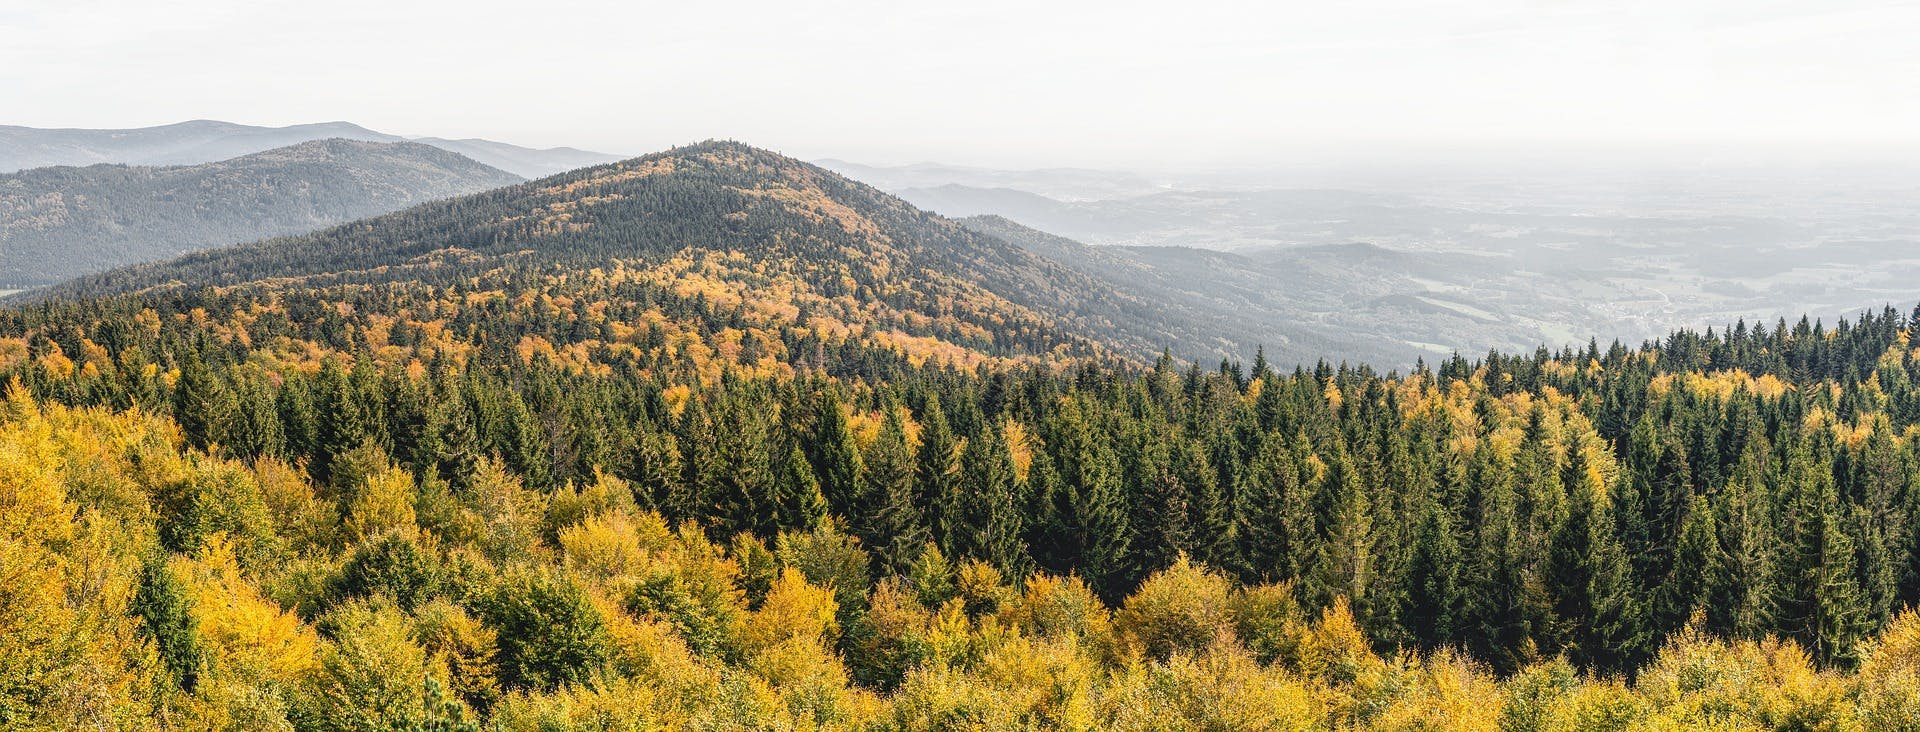 Ausblick von einem Berg, der den Mischwald im Bayerischen Wald zeigt (Foto: Felix Mittermeier)